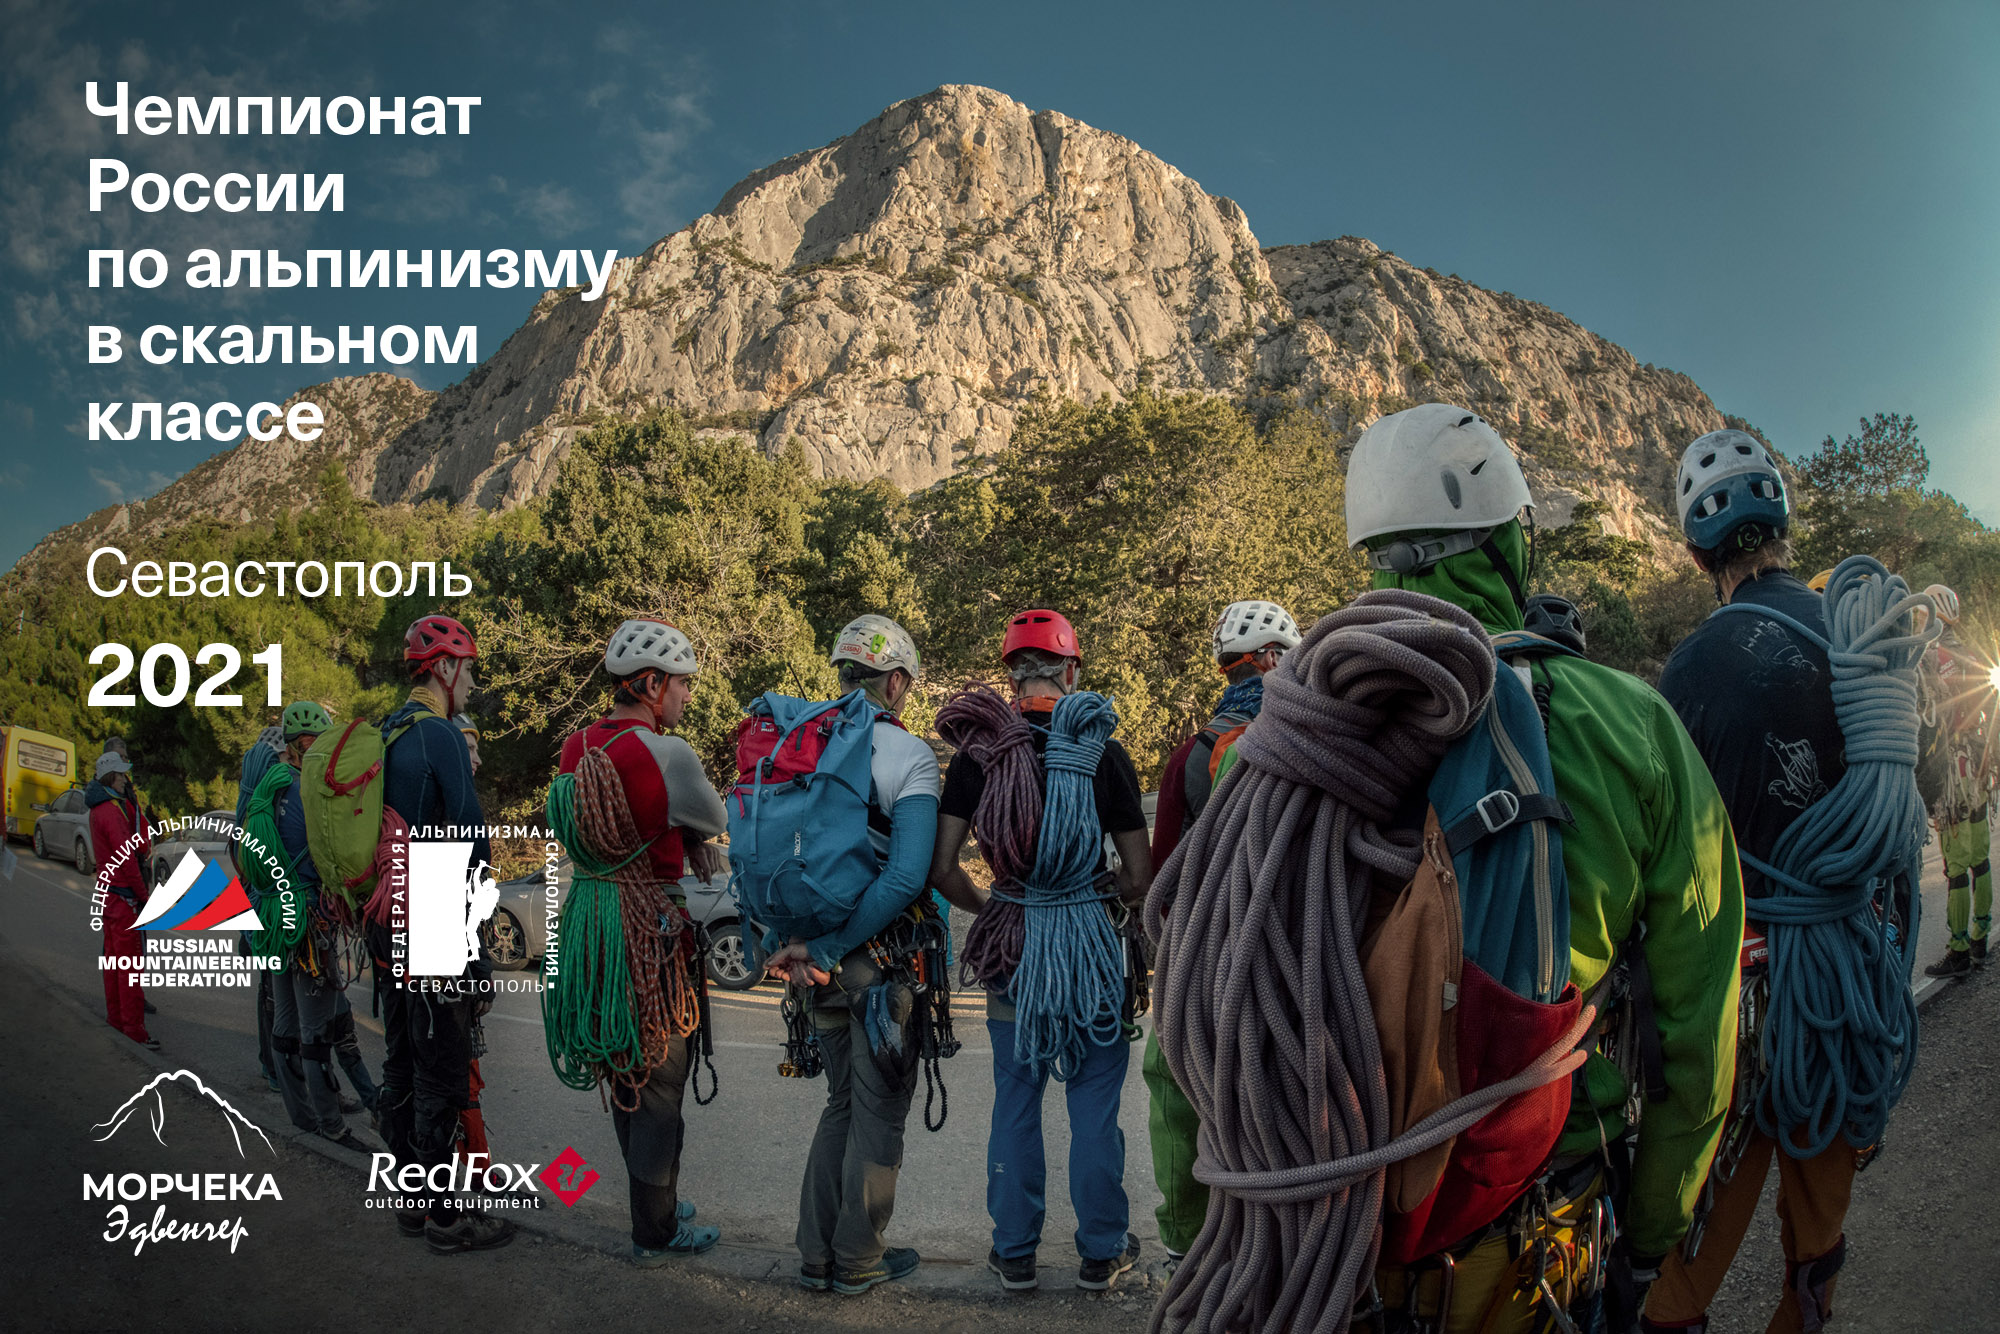 «Морчека Эдвенчер» — спонсор Чемпионата России по альпинизму в скальном классе 2021 г.